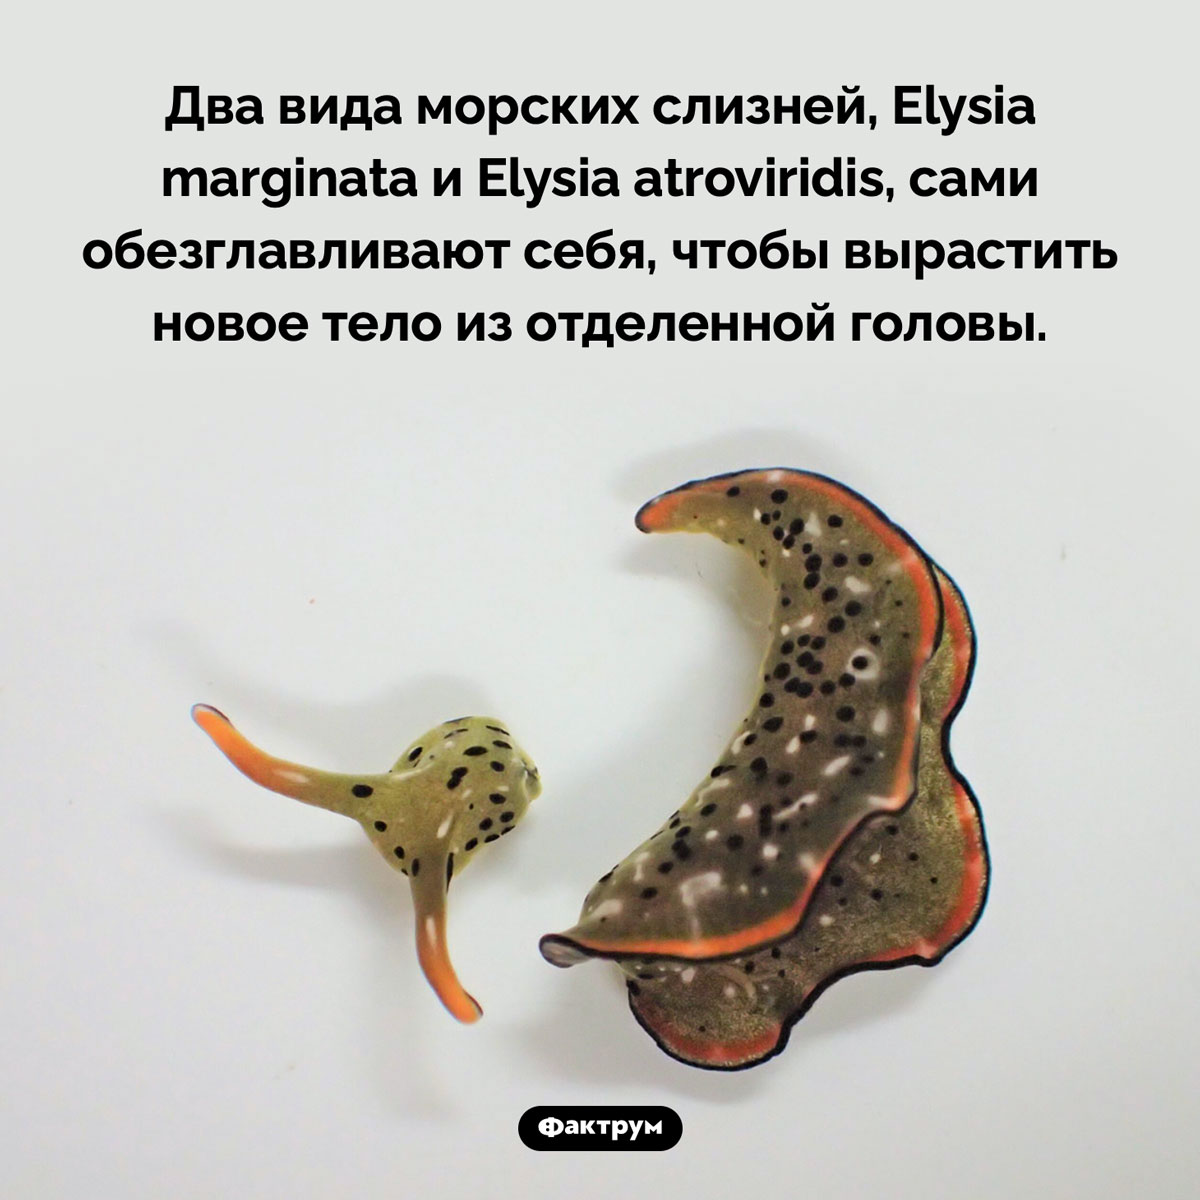 Слизневое членовредительство. Два вида морских слизней, Elysia marginata и Elysia atroviridis, сами обезглавливают себя, чтобы вырастить новое тело из отделенной головы.